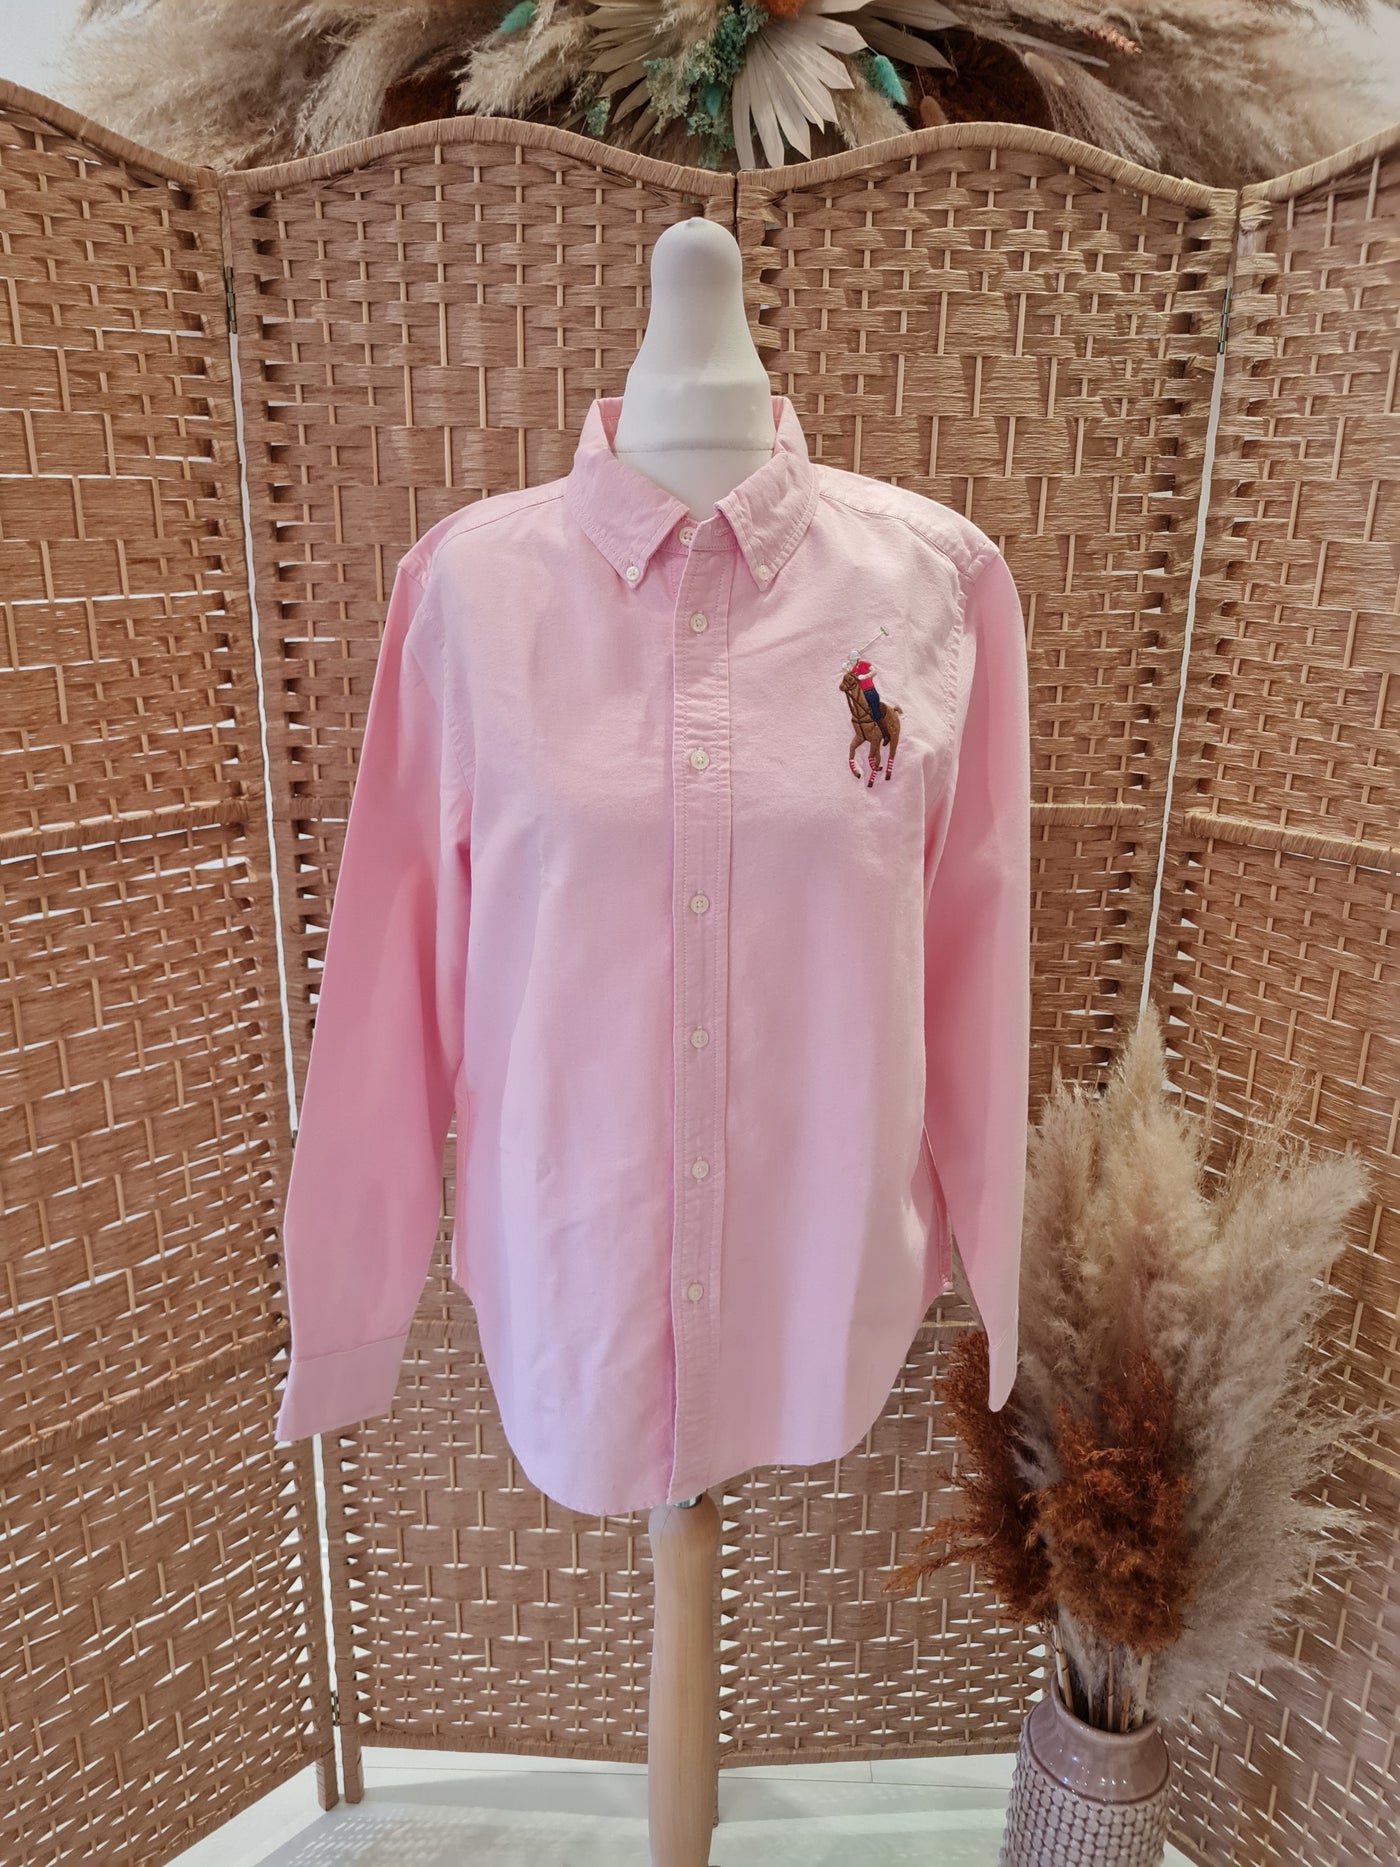 Polo Ralph Lauren pink shirt S/M